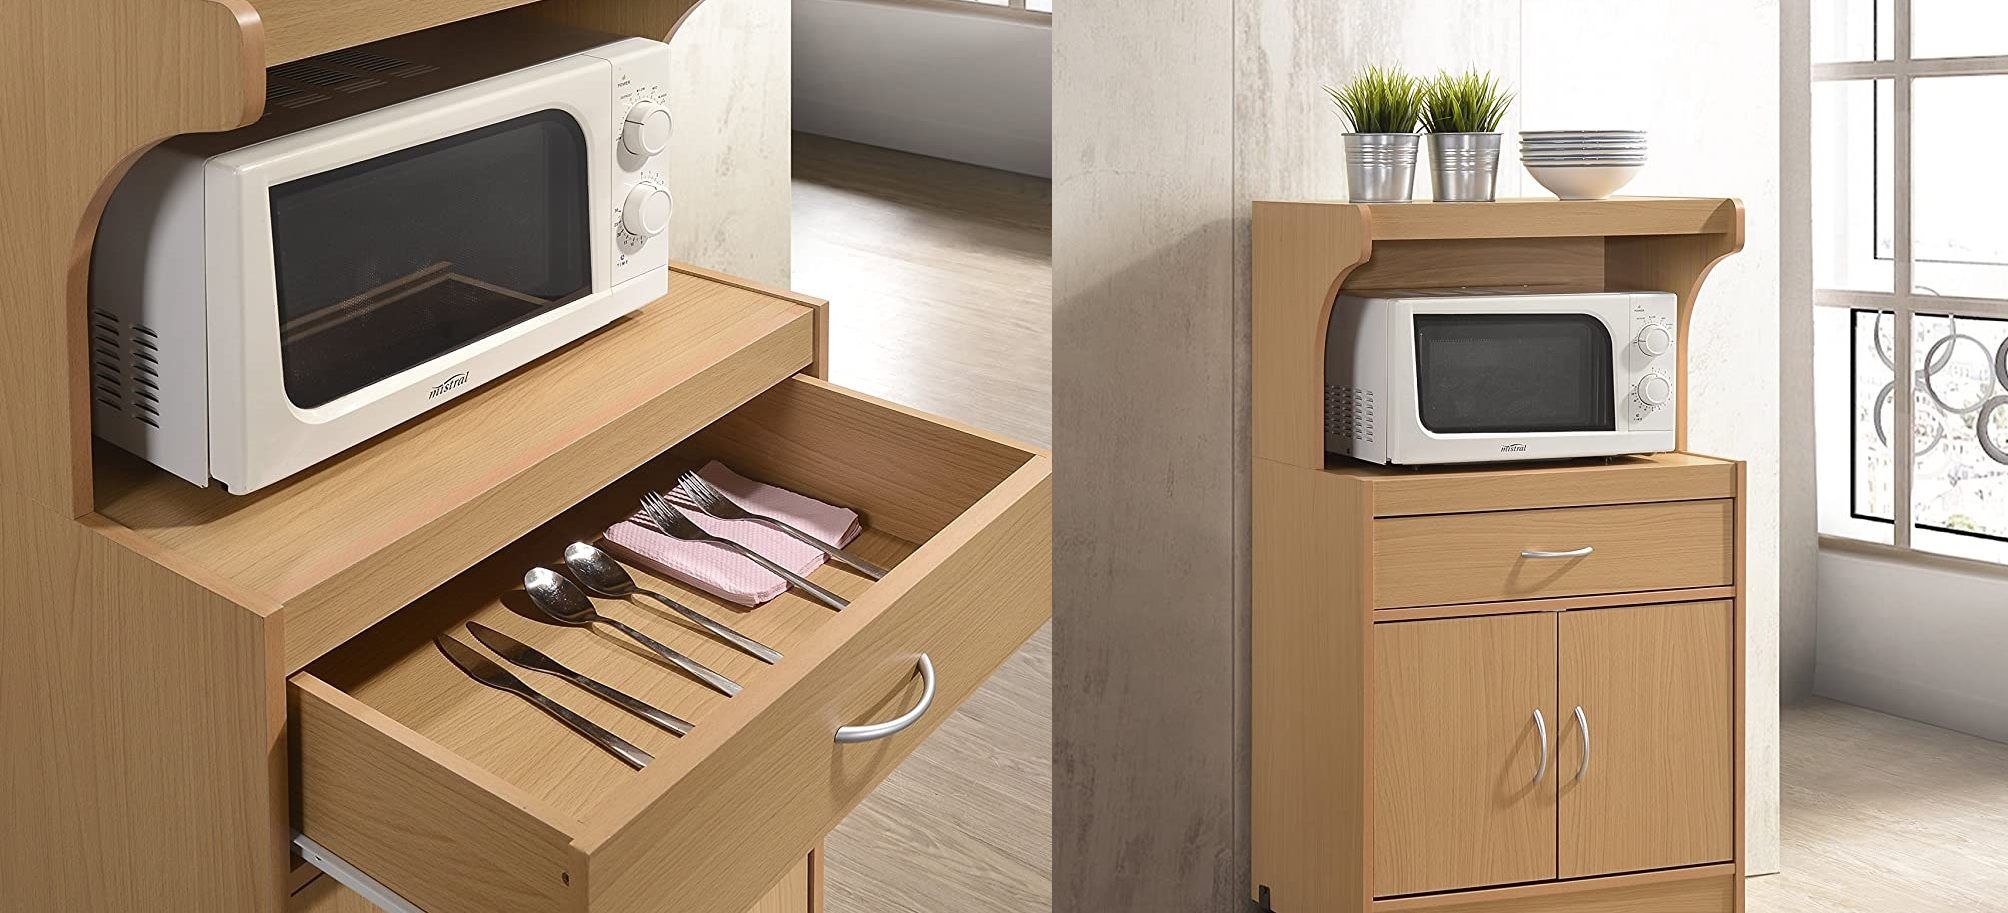 5 estilos de muebles para colocar tu horno microondas en la cocina | El